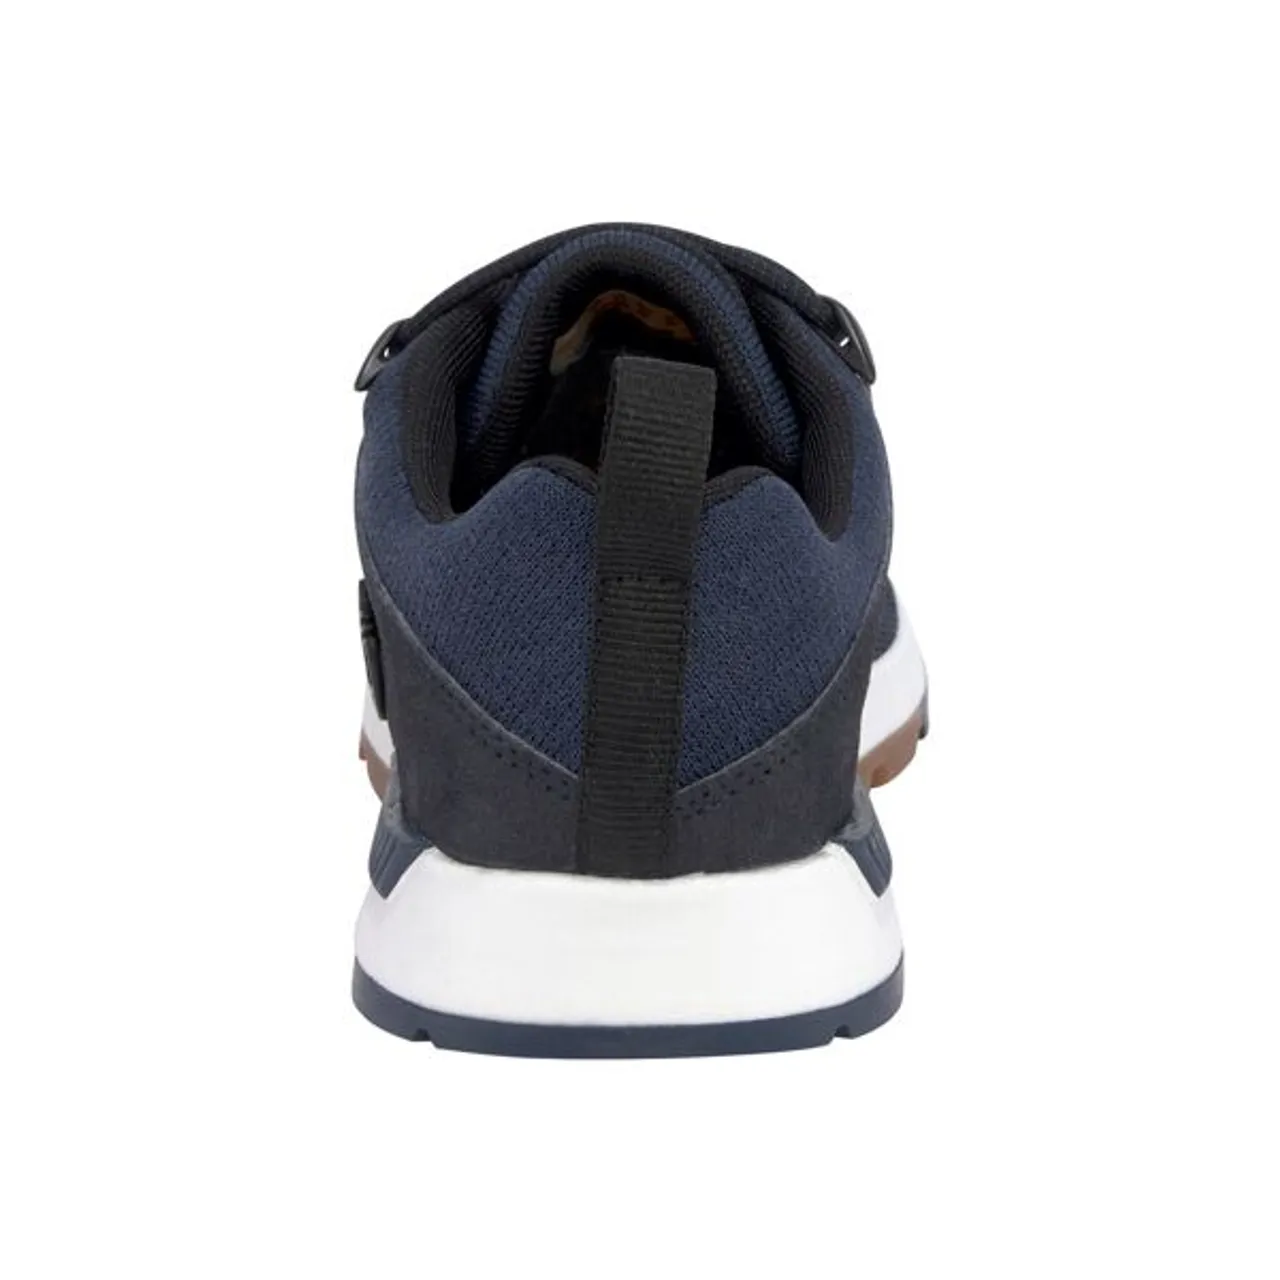 Sneaker TIMBERLAND "Sprint Trekr Low Knit" Gr. 45, blau (navy) Schuhe Herren Outdoor-Schuhe